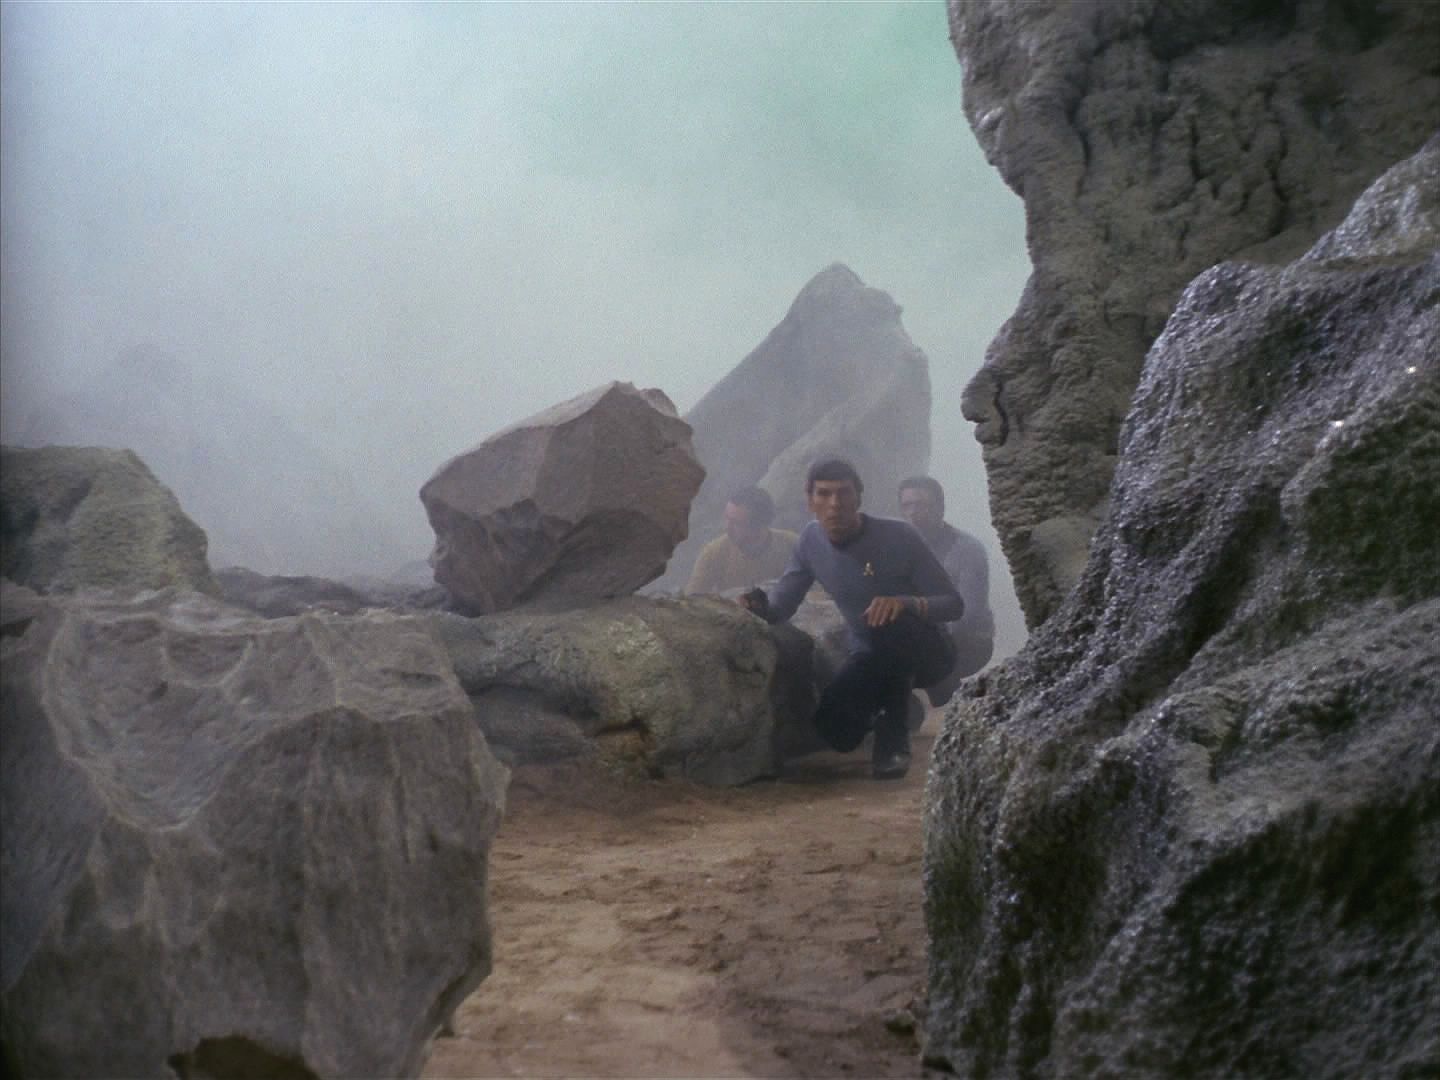 Spock, který výsadku velel, nechal Scottymu opravy a šel vyzkoumat, co se stalo. Zjistili, že na planetě žijí obrovští primitivní humanoidi. Spockův logický přístup výsadek víc než irituje.